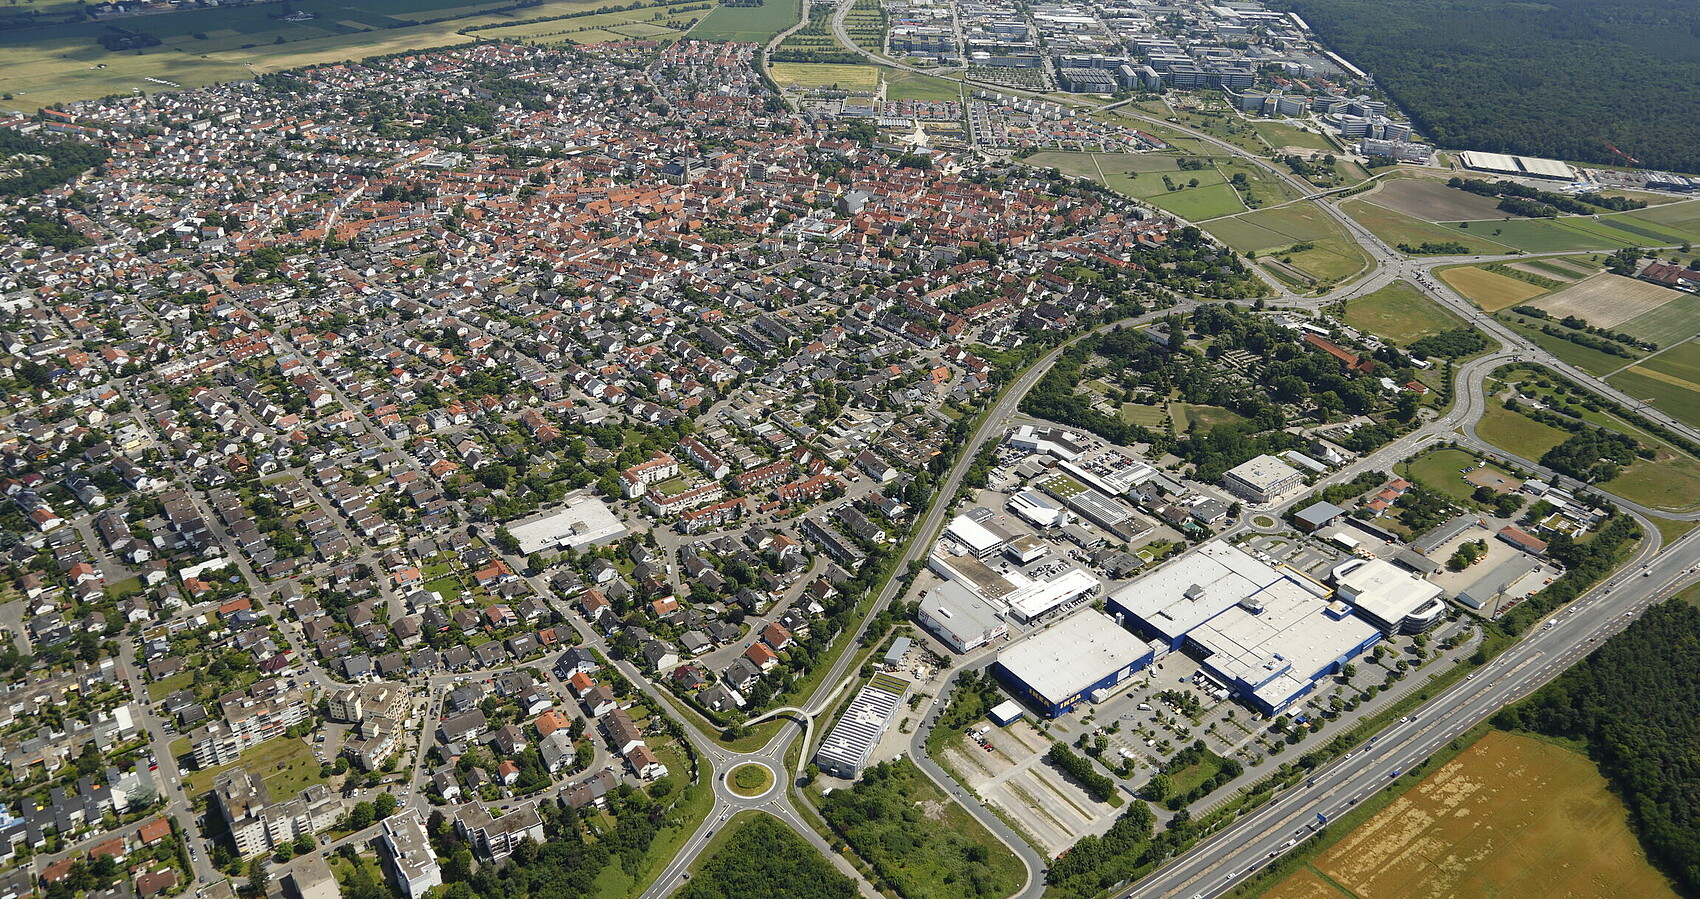 Luftbild von Walldorf mit SAP SE, Heidelberger Druckmaschinen AG, MLP SE und Wiesloch im Hintergrund